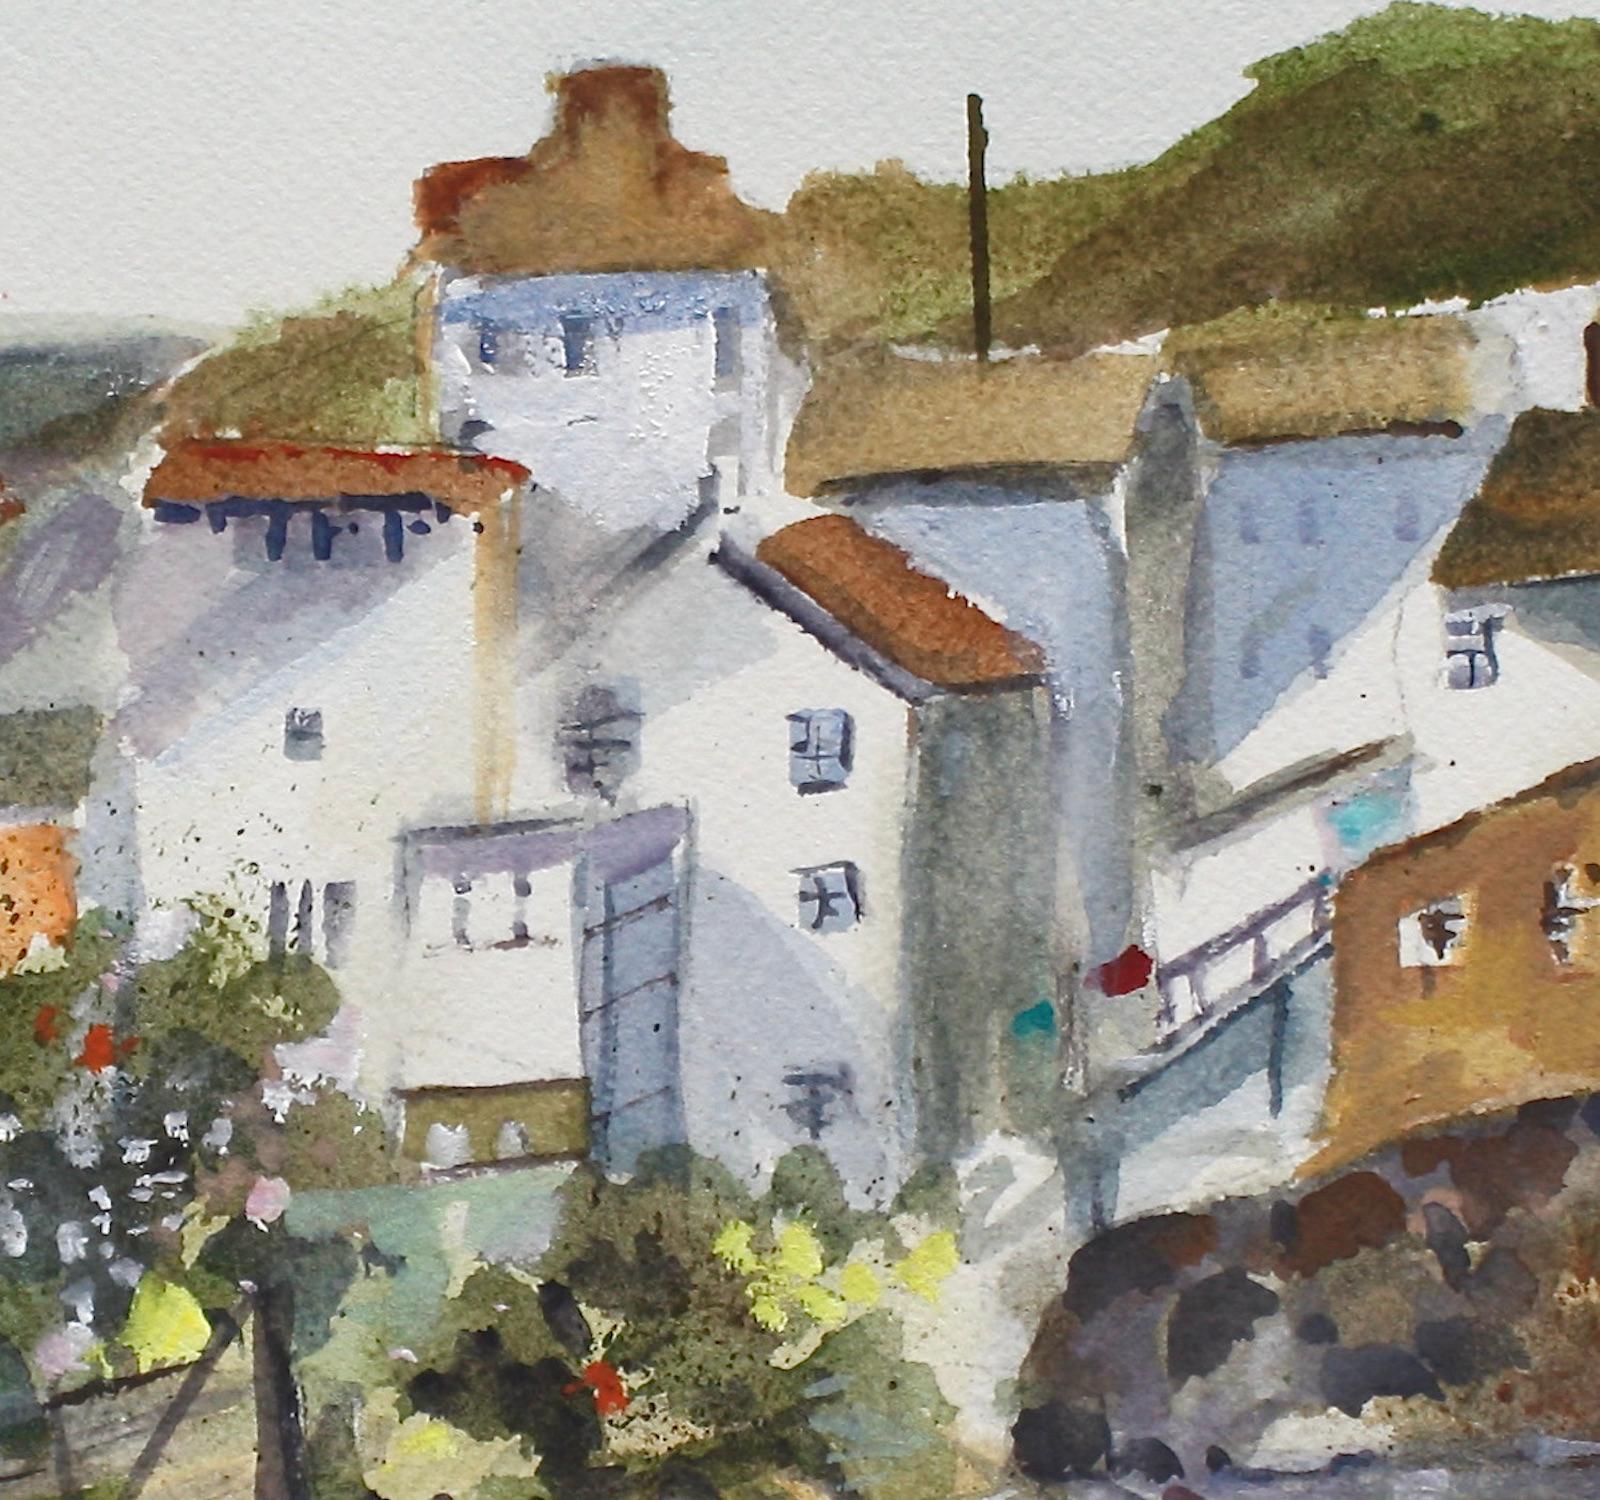 <p>Kommentare des Künstlers<br>Der Künstler Joe Giuffrida präsentiert ein Küstendorf an der englischen Küste, das den Charme der britischen Architektur zeigt. Sein Entwurf mit den weiß verputzten Häusern, umgeben von der herrlichen Küstenlandschaft